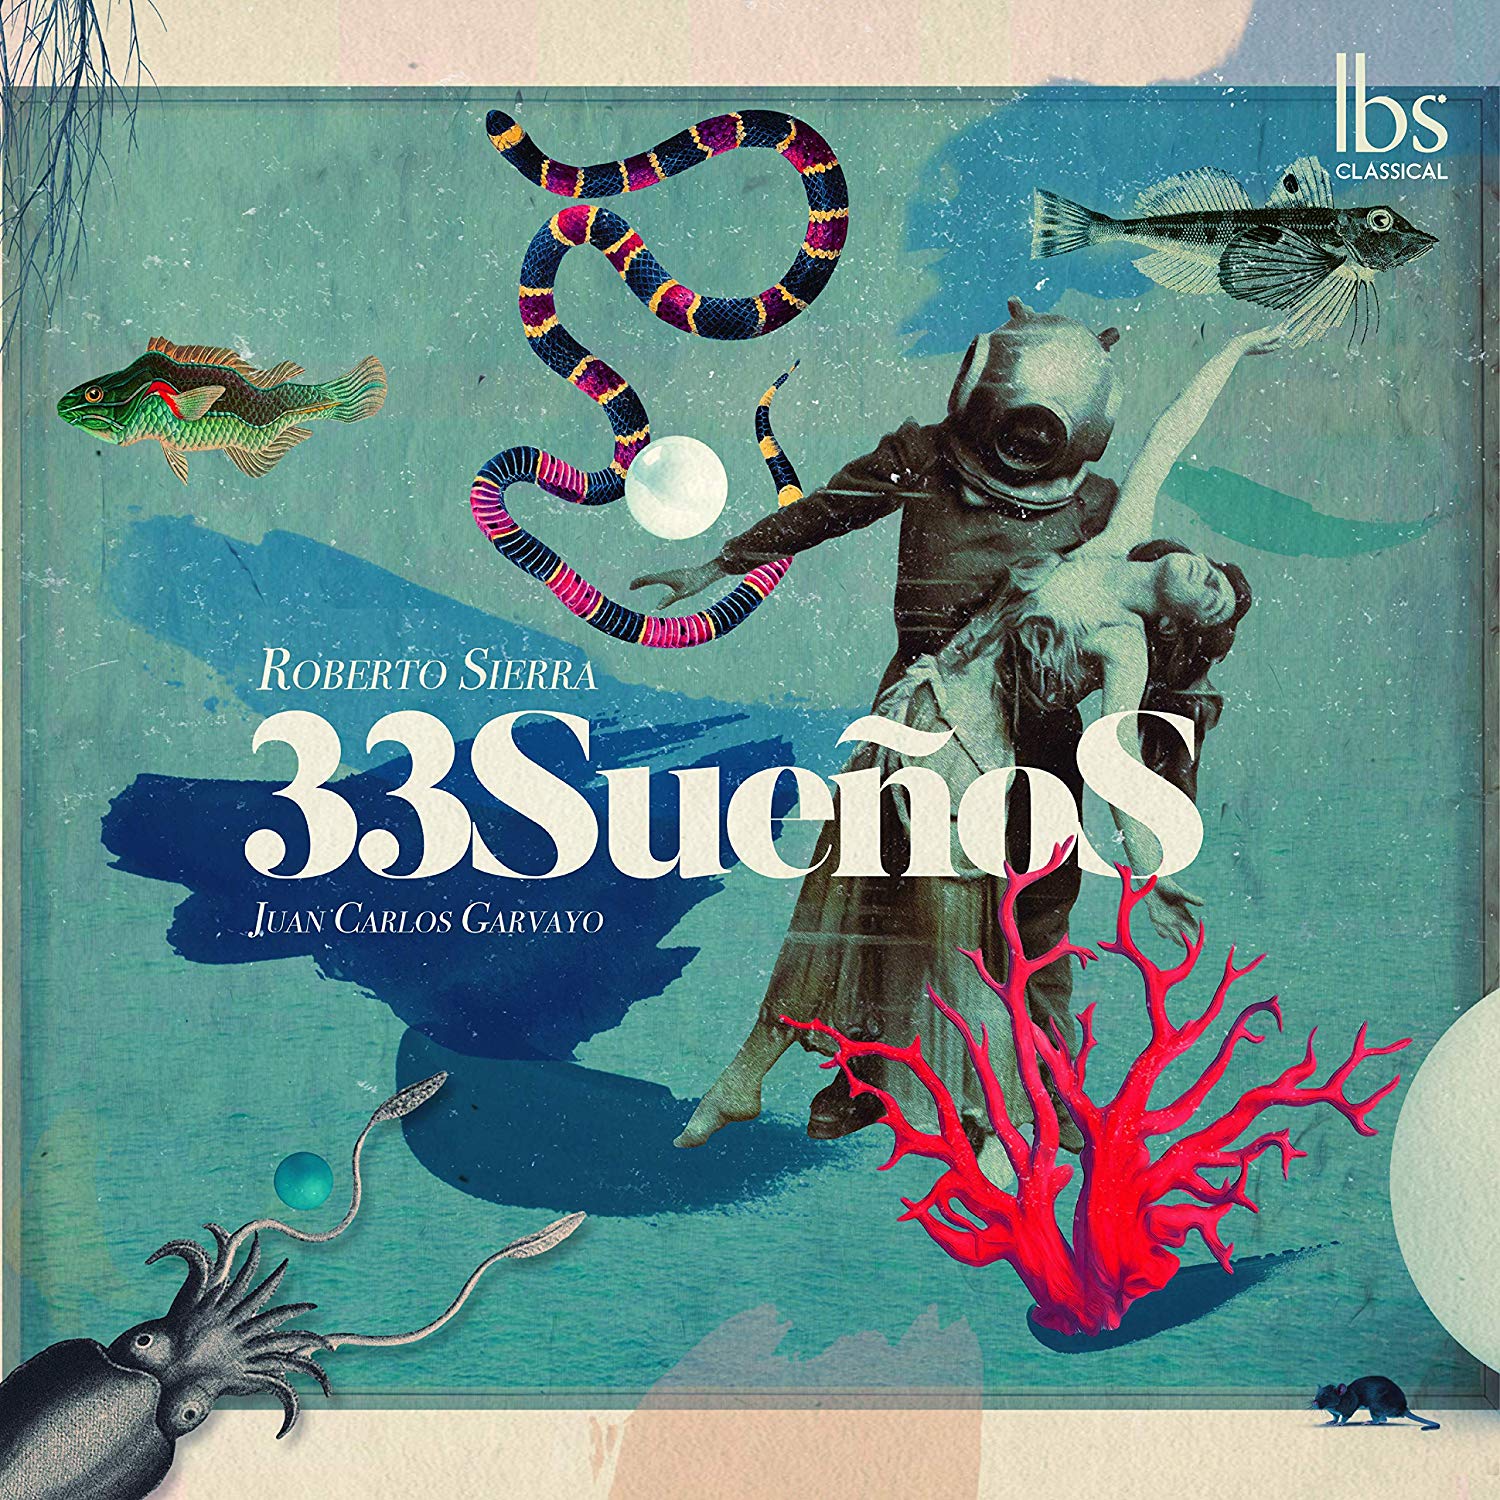 Novedades discográficas: «33 Sueños»  de Roberto Sierra editado en Ibs Classical